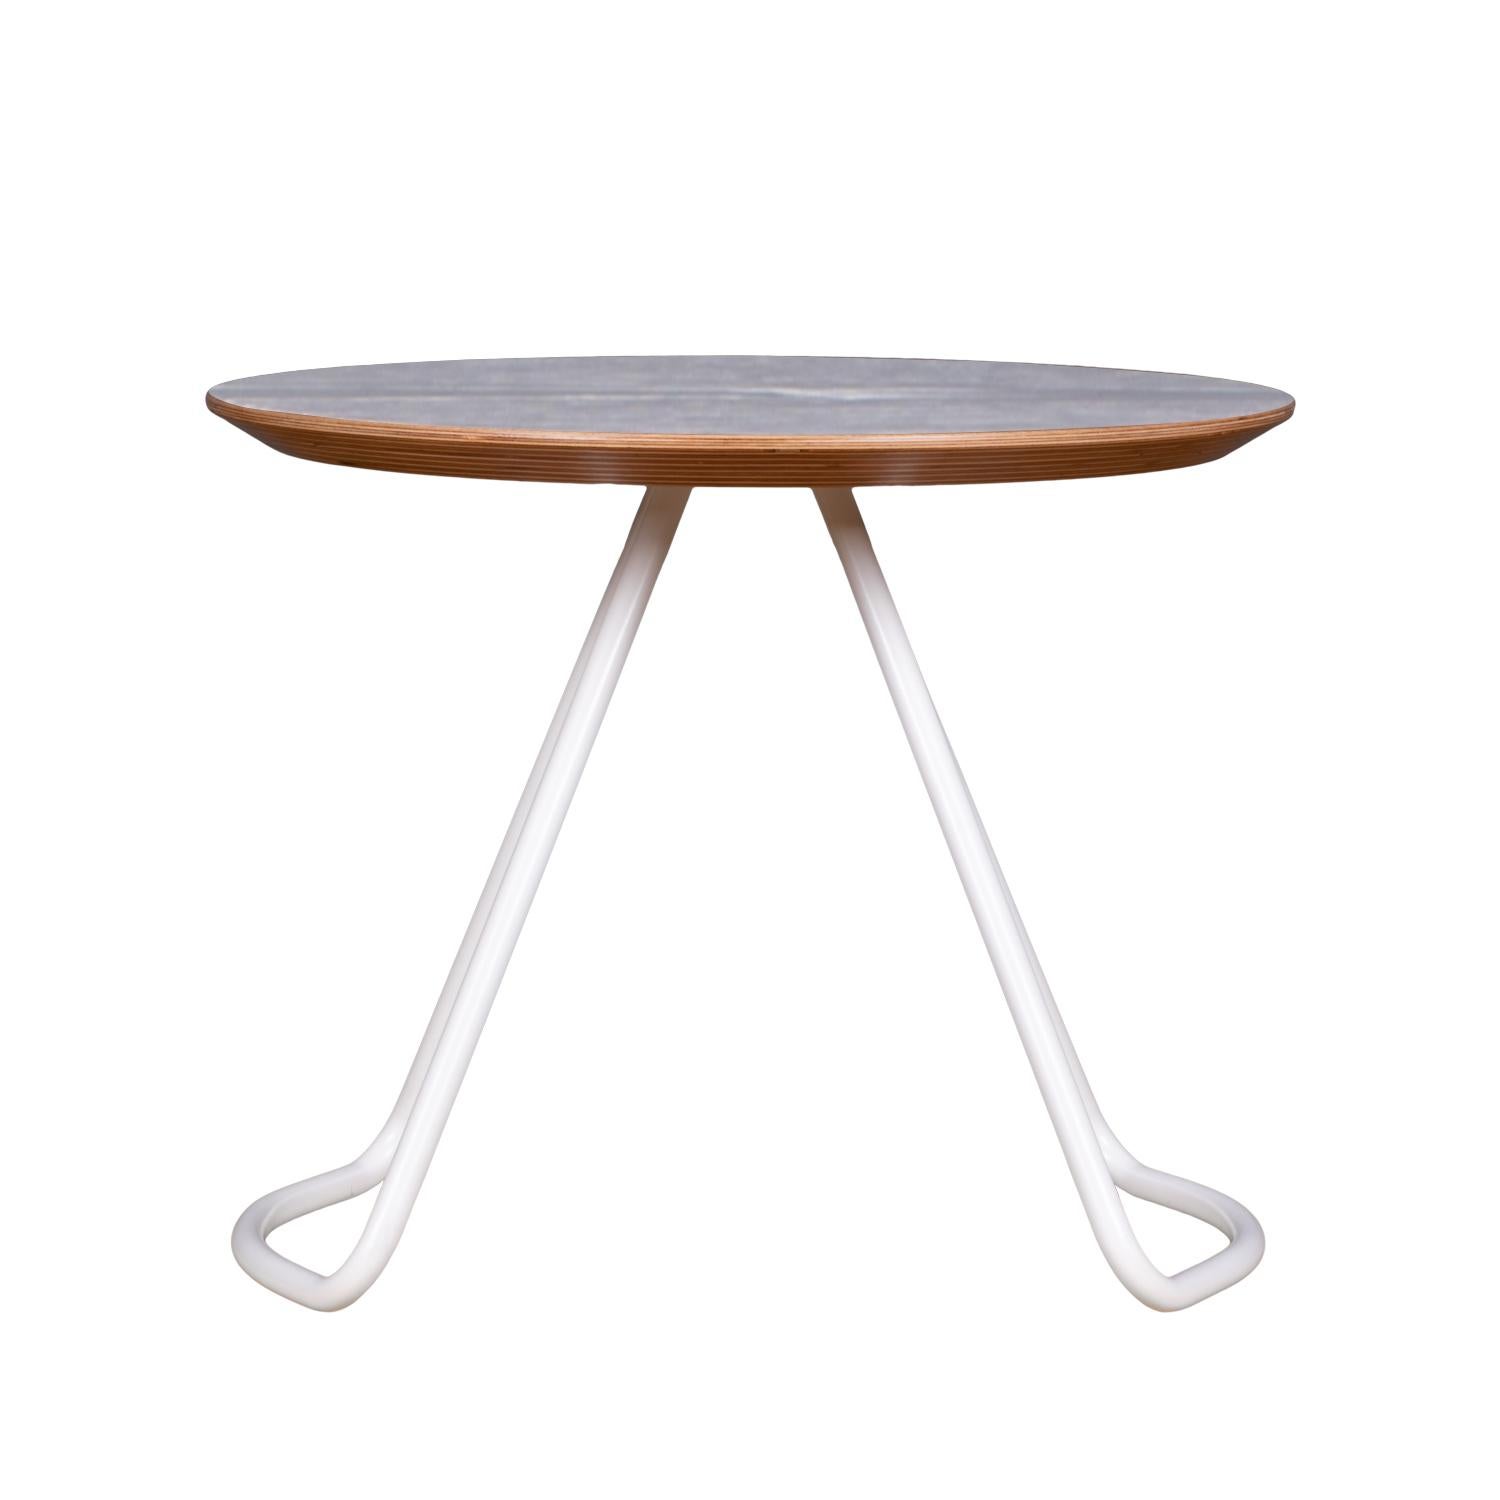 La table basse Sama fait partie de la collection Sama, qui offre une fonctionnalité grâce à des formes simples, mais frappantes et sculpturales qui ajoutent une touche unique et élégante à son environnement.

Inspiré par la poésie des costumes